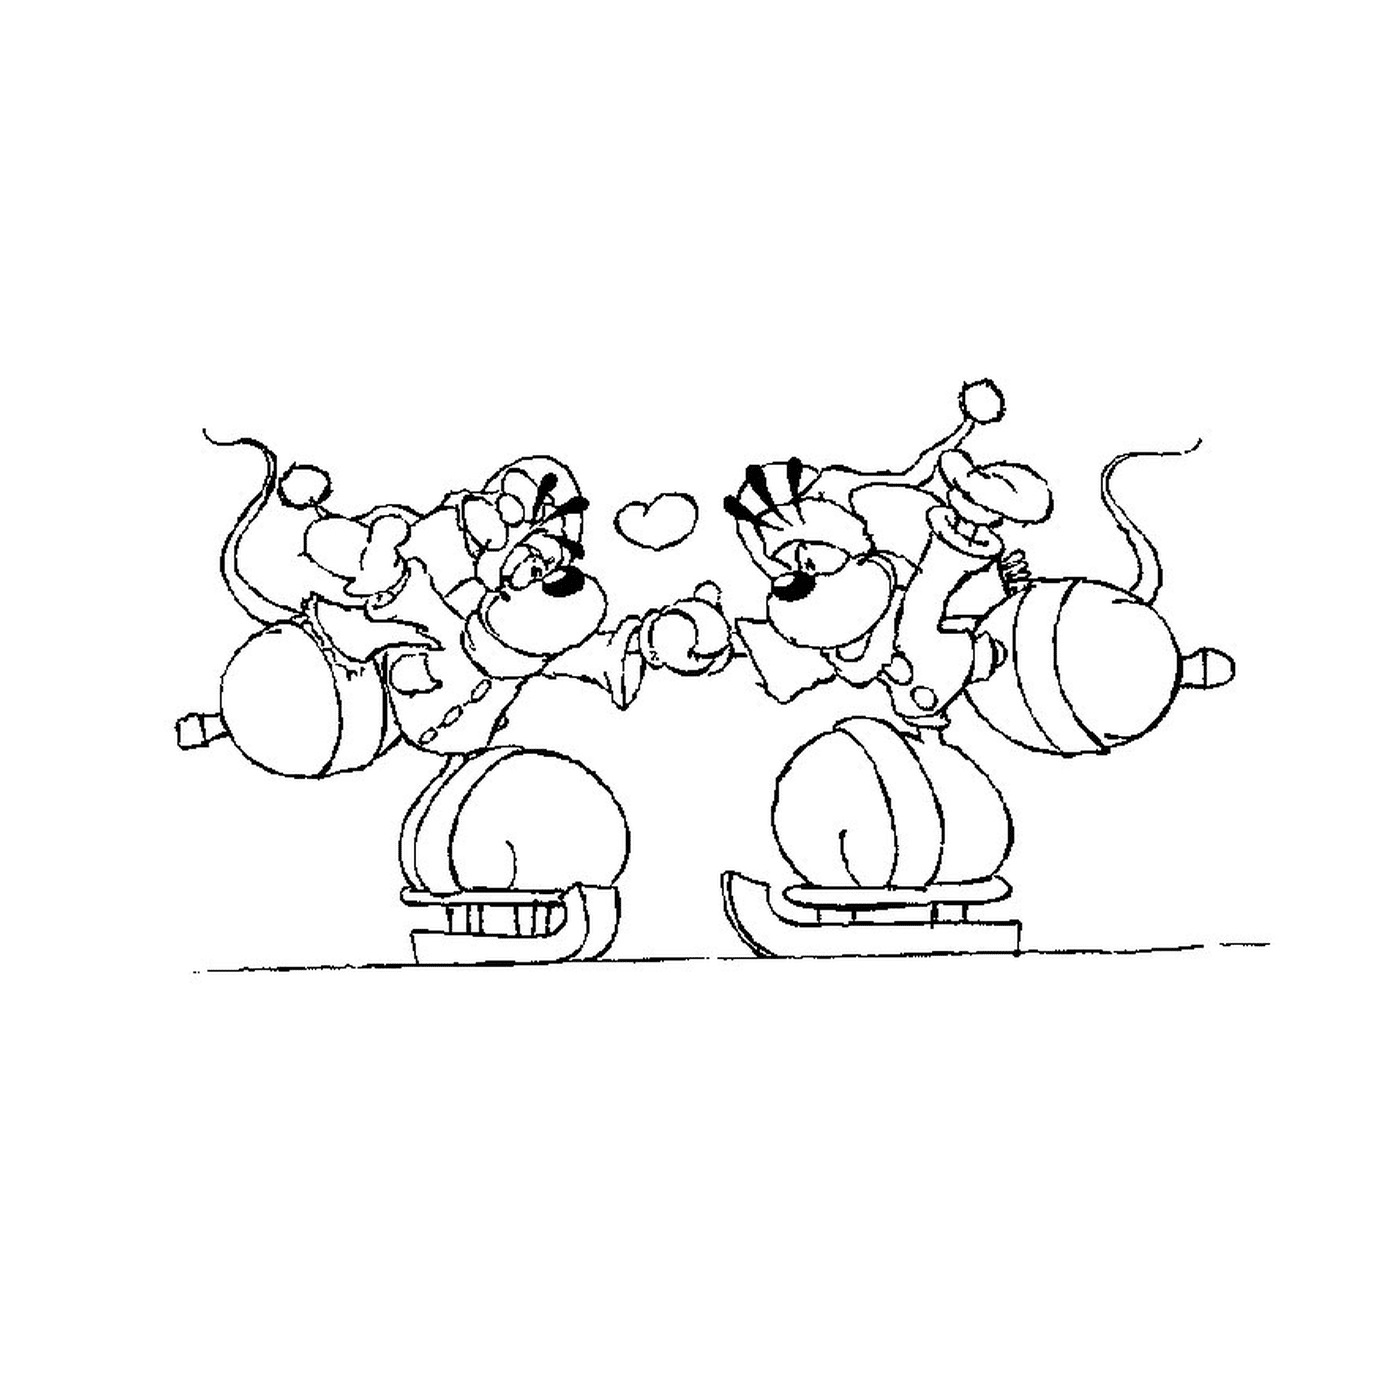  Un par de perros de dibujos animados de pie juntos 